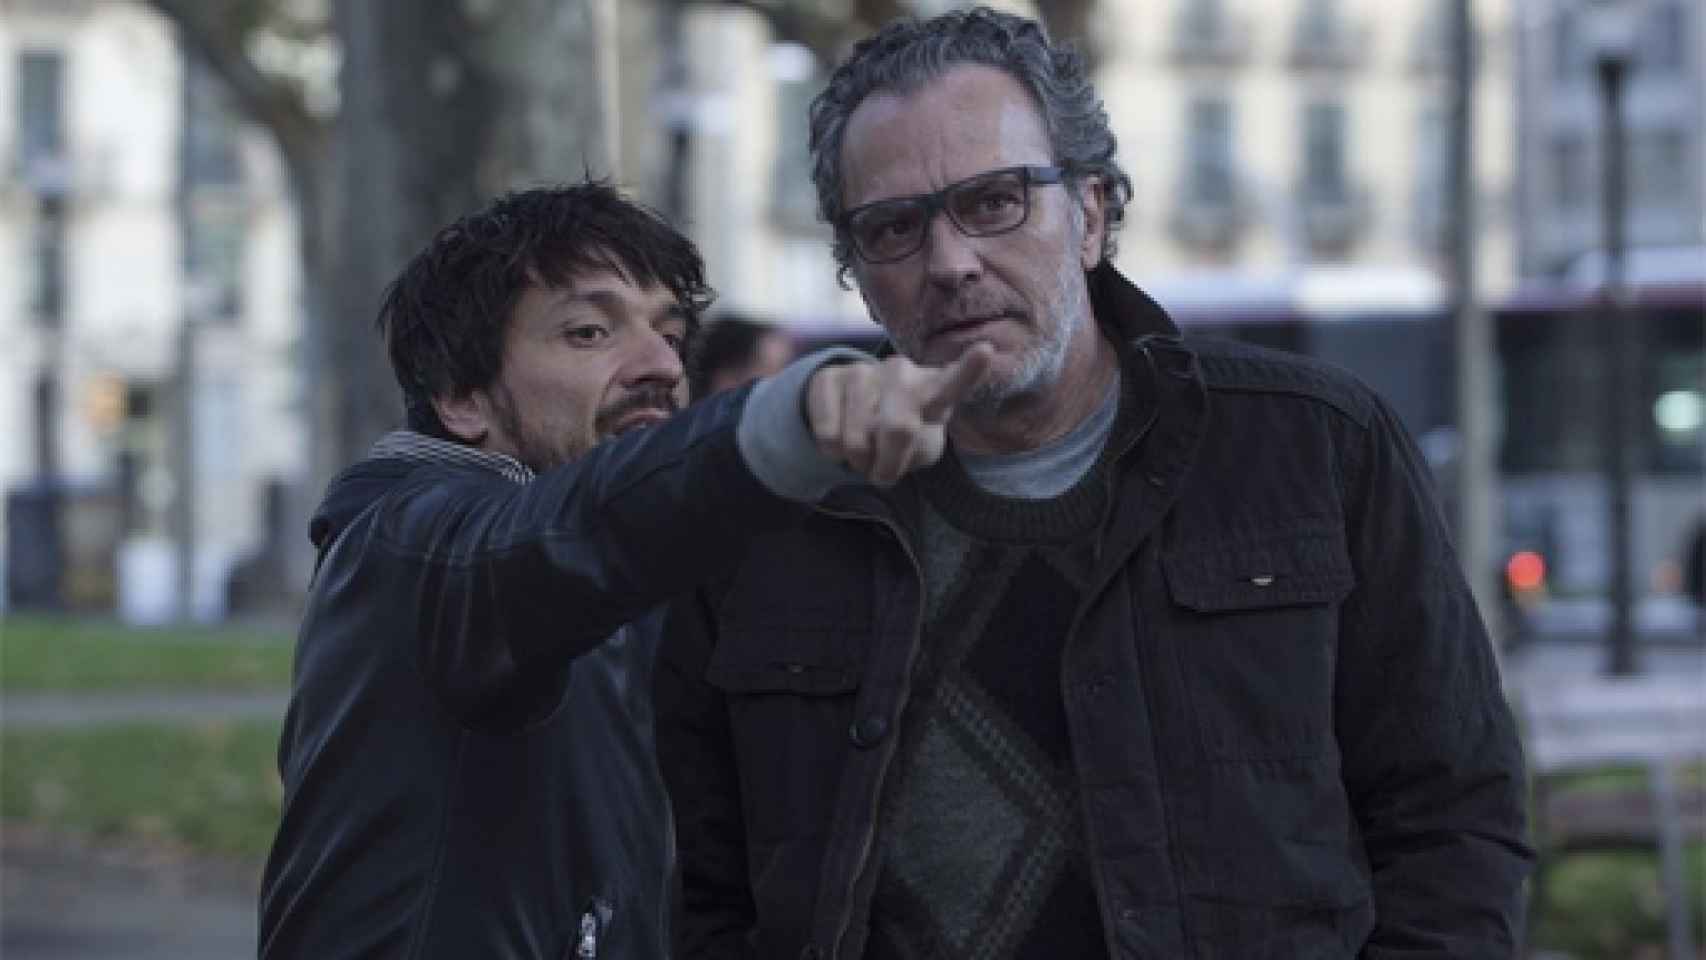 Image: Oriol Paulo: Tarantino me enseñó a huir de la narrativa convencional